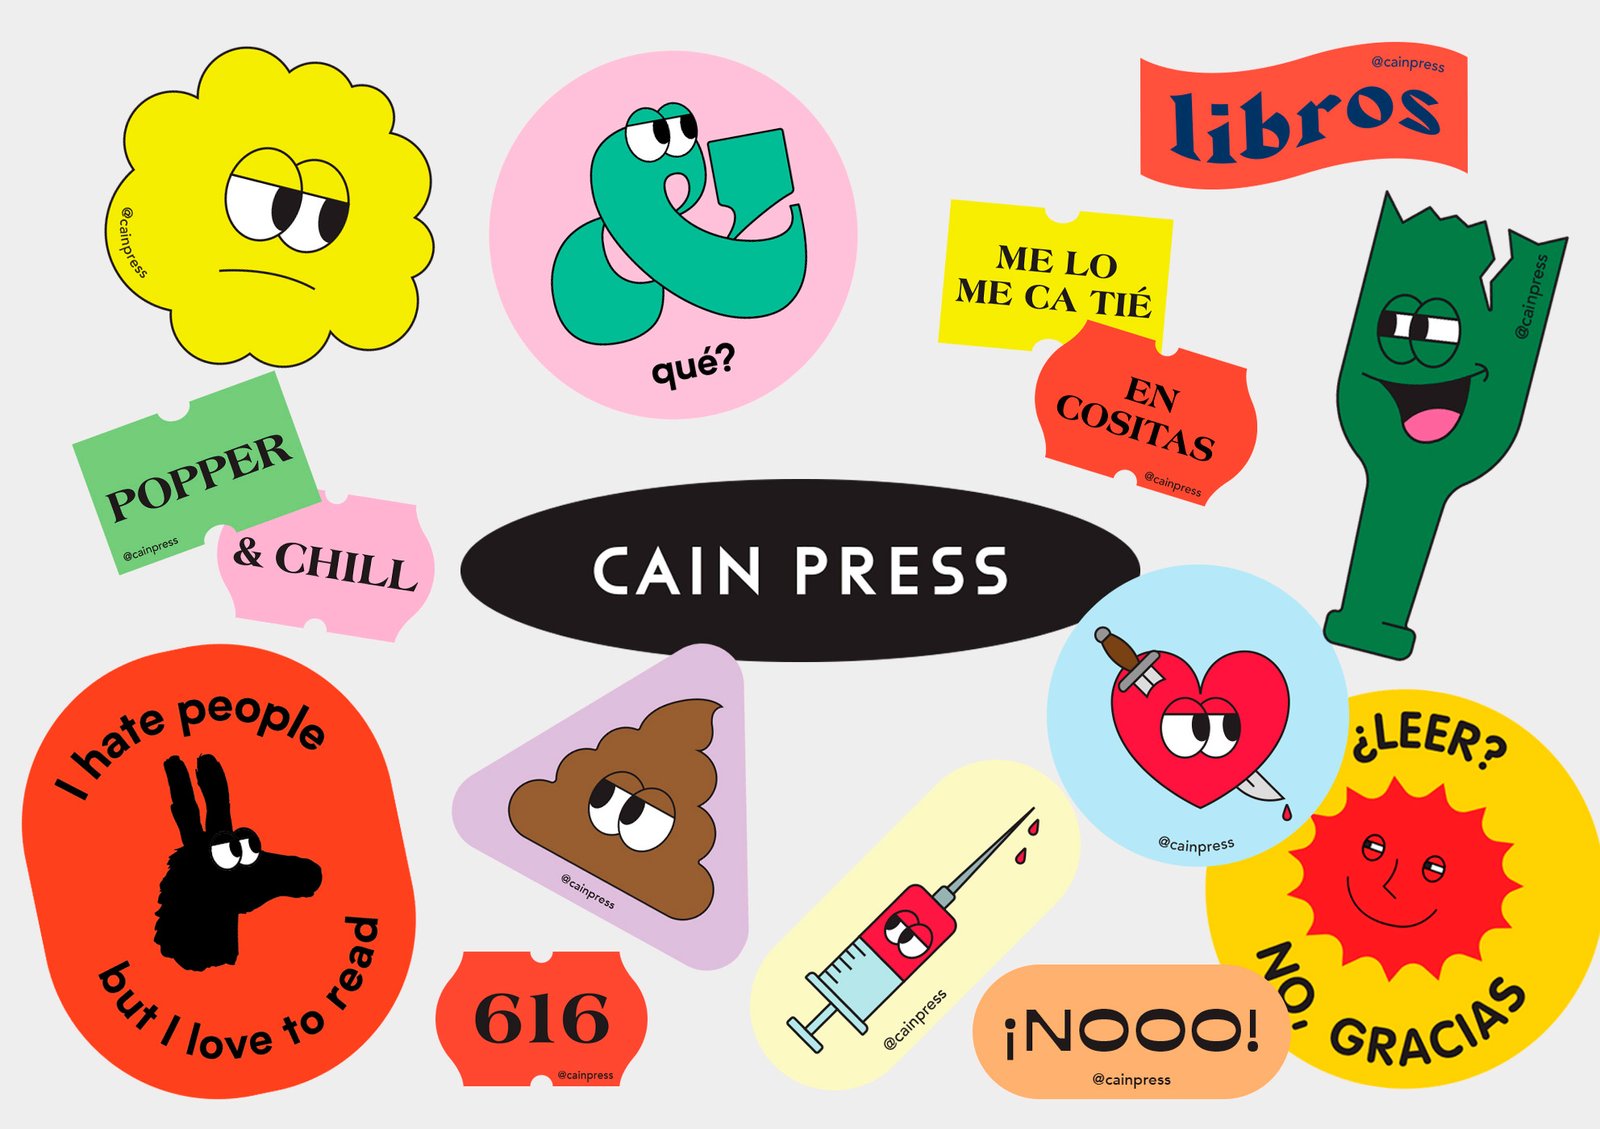 Caín Press